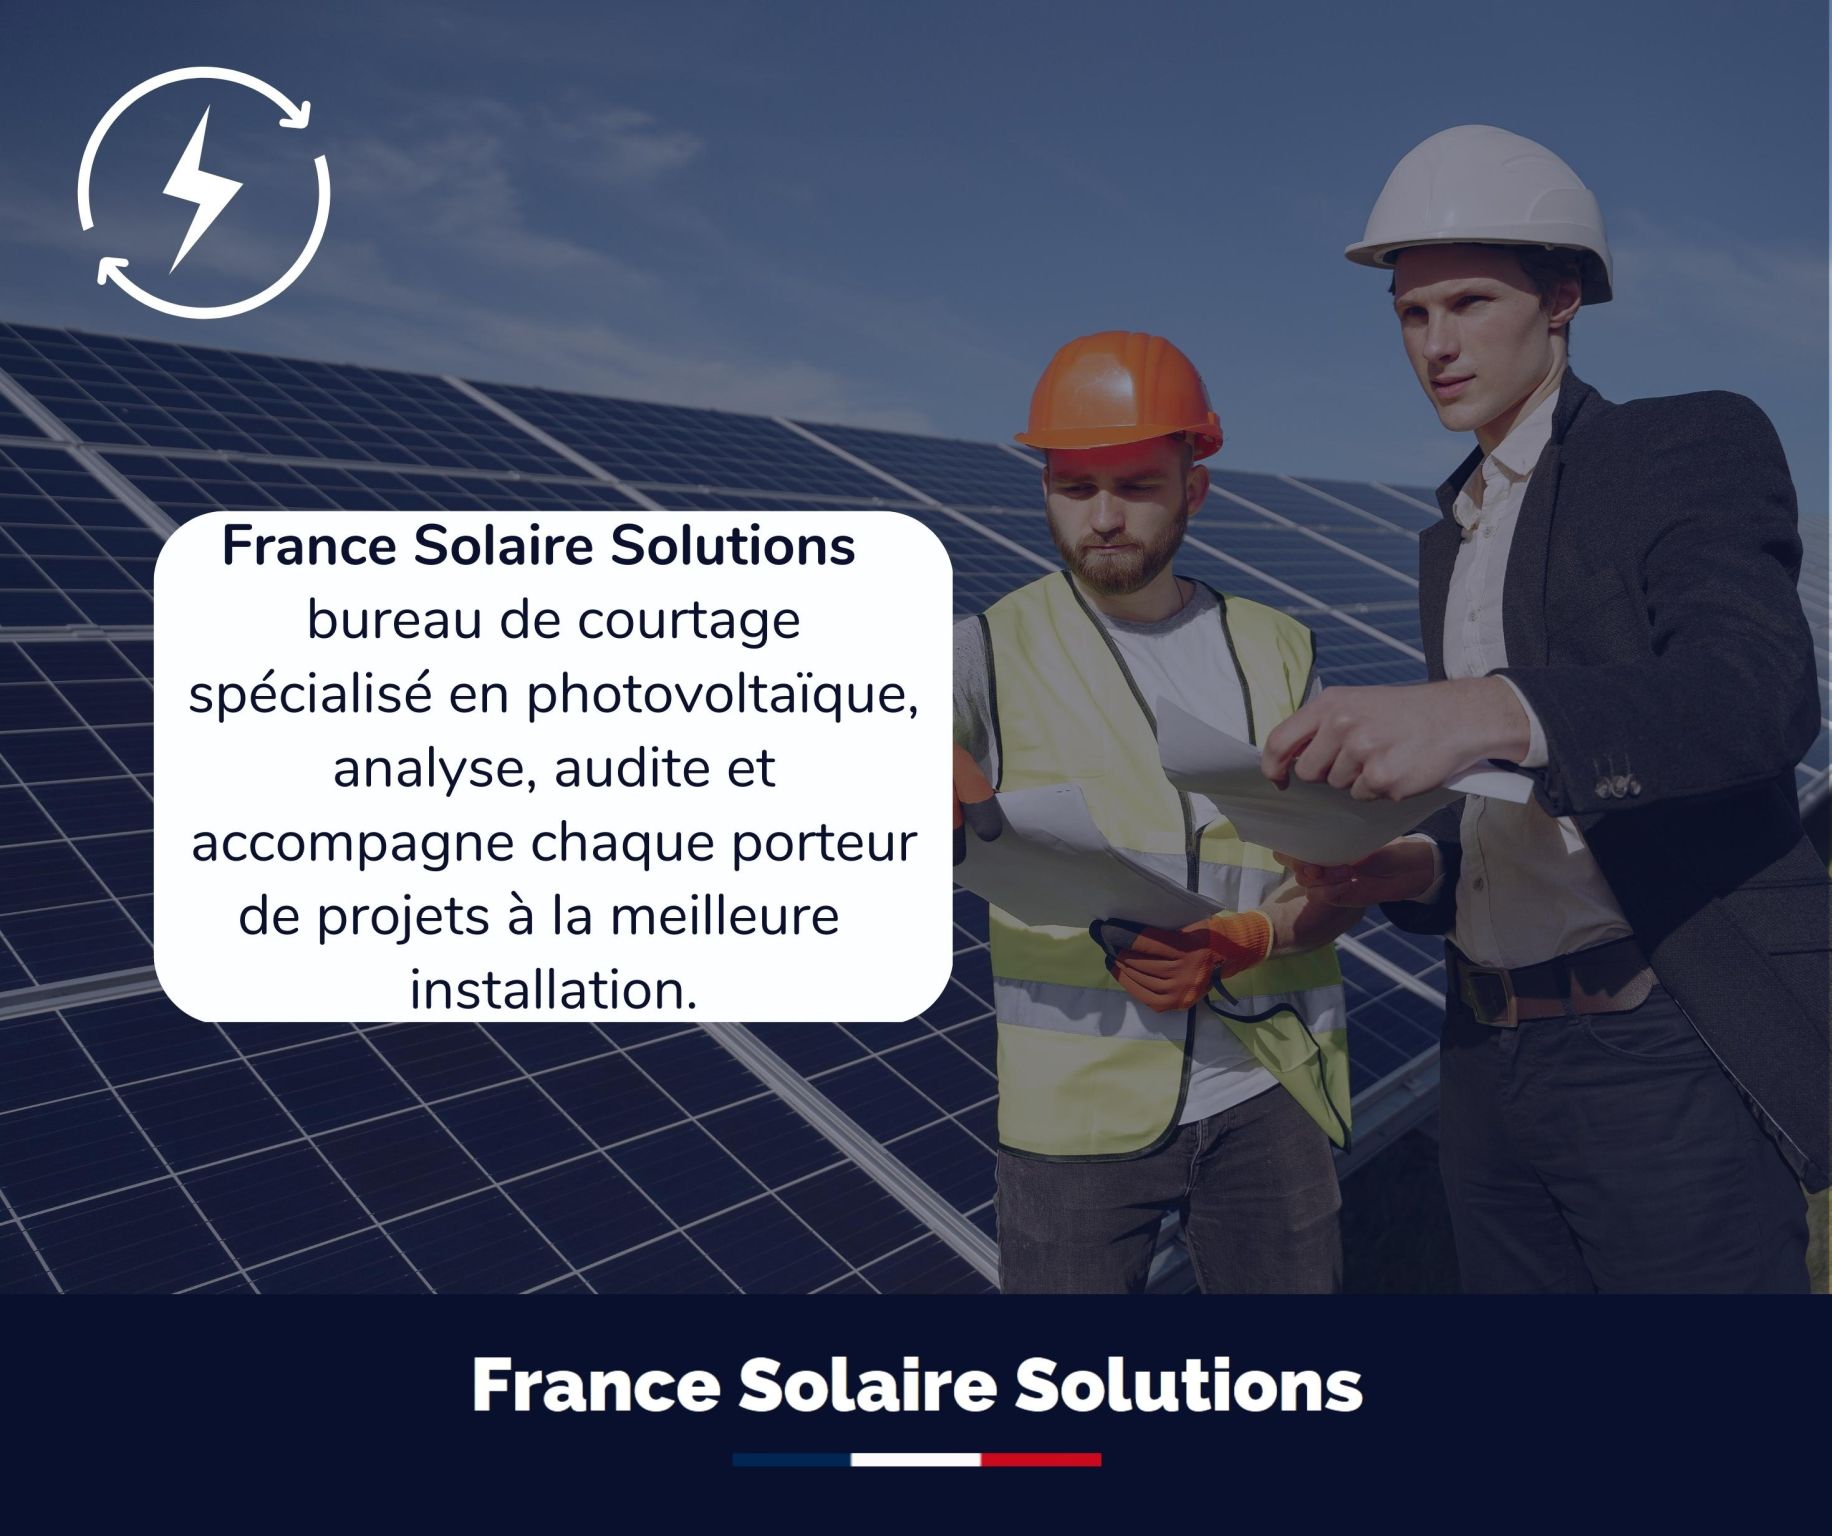 France Solaire Solutions, Bureau de courtage spécialisé en photovoltaïque, analyse, audite et accompagne chaque porteur de projets à la meilleure installateur